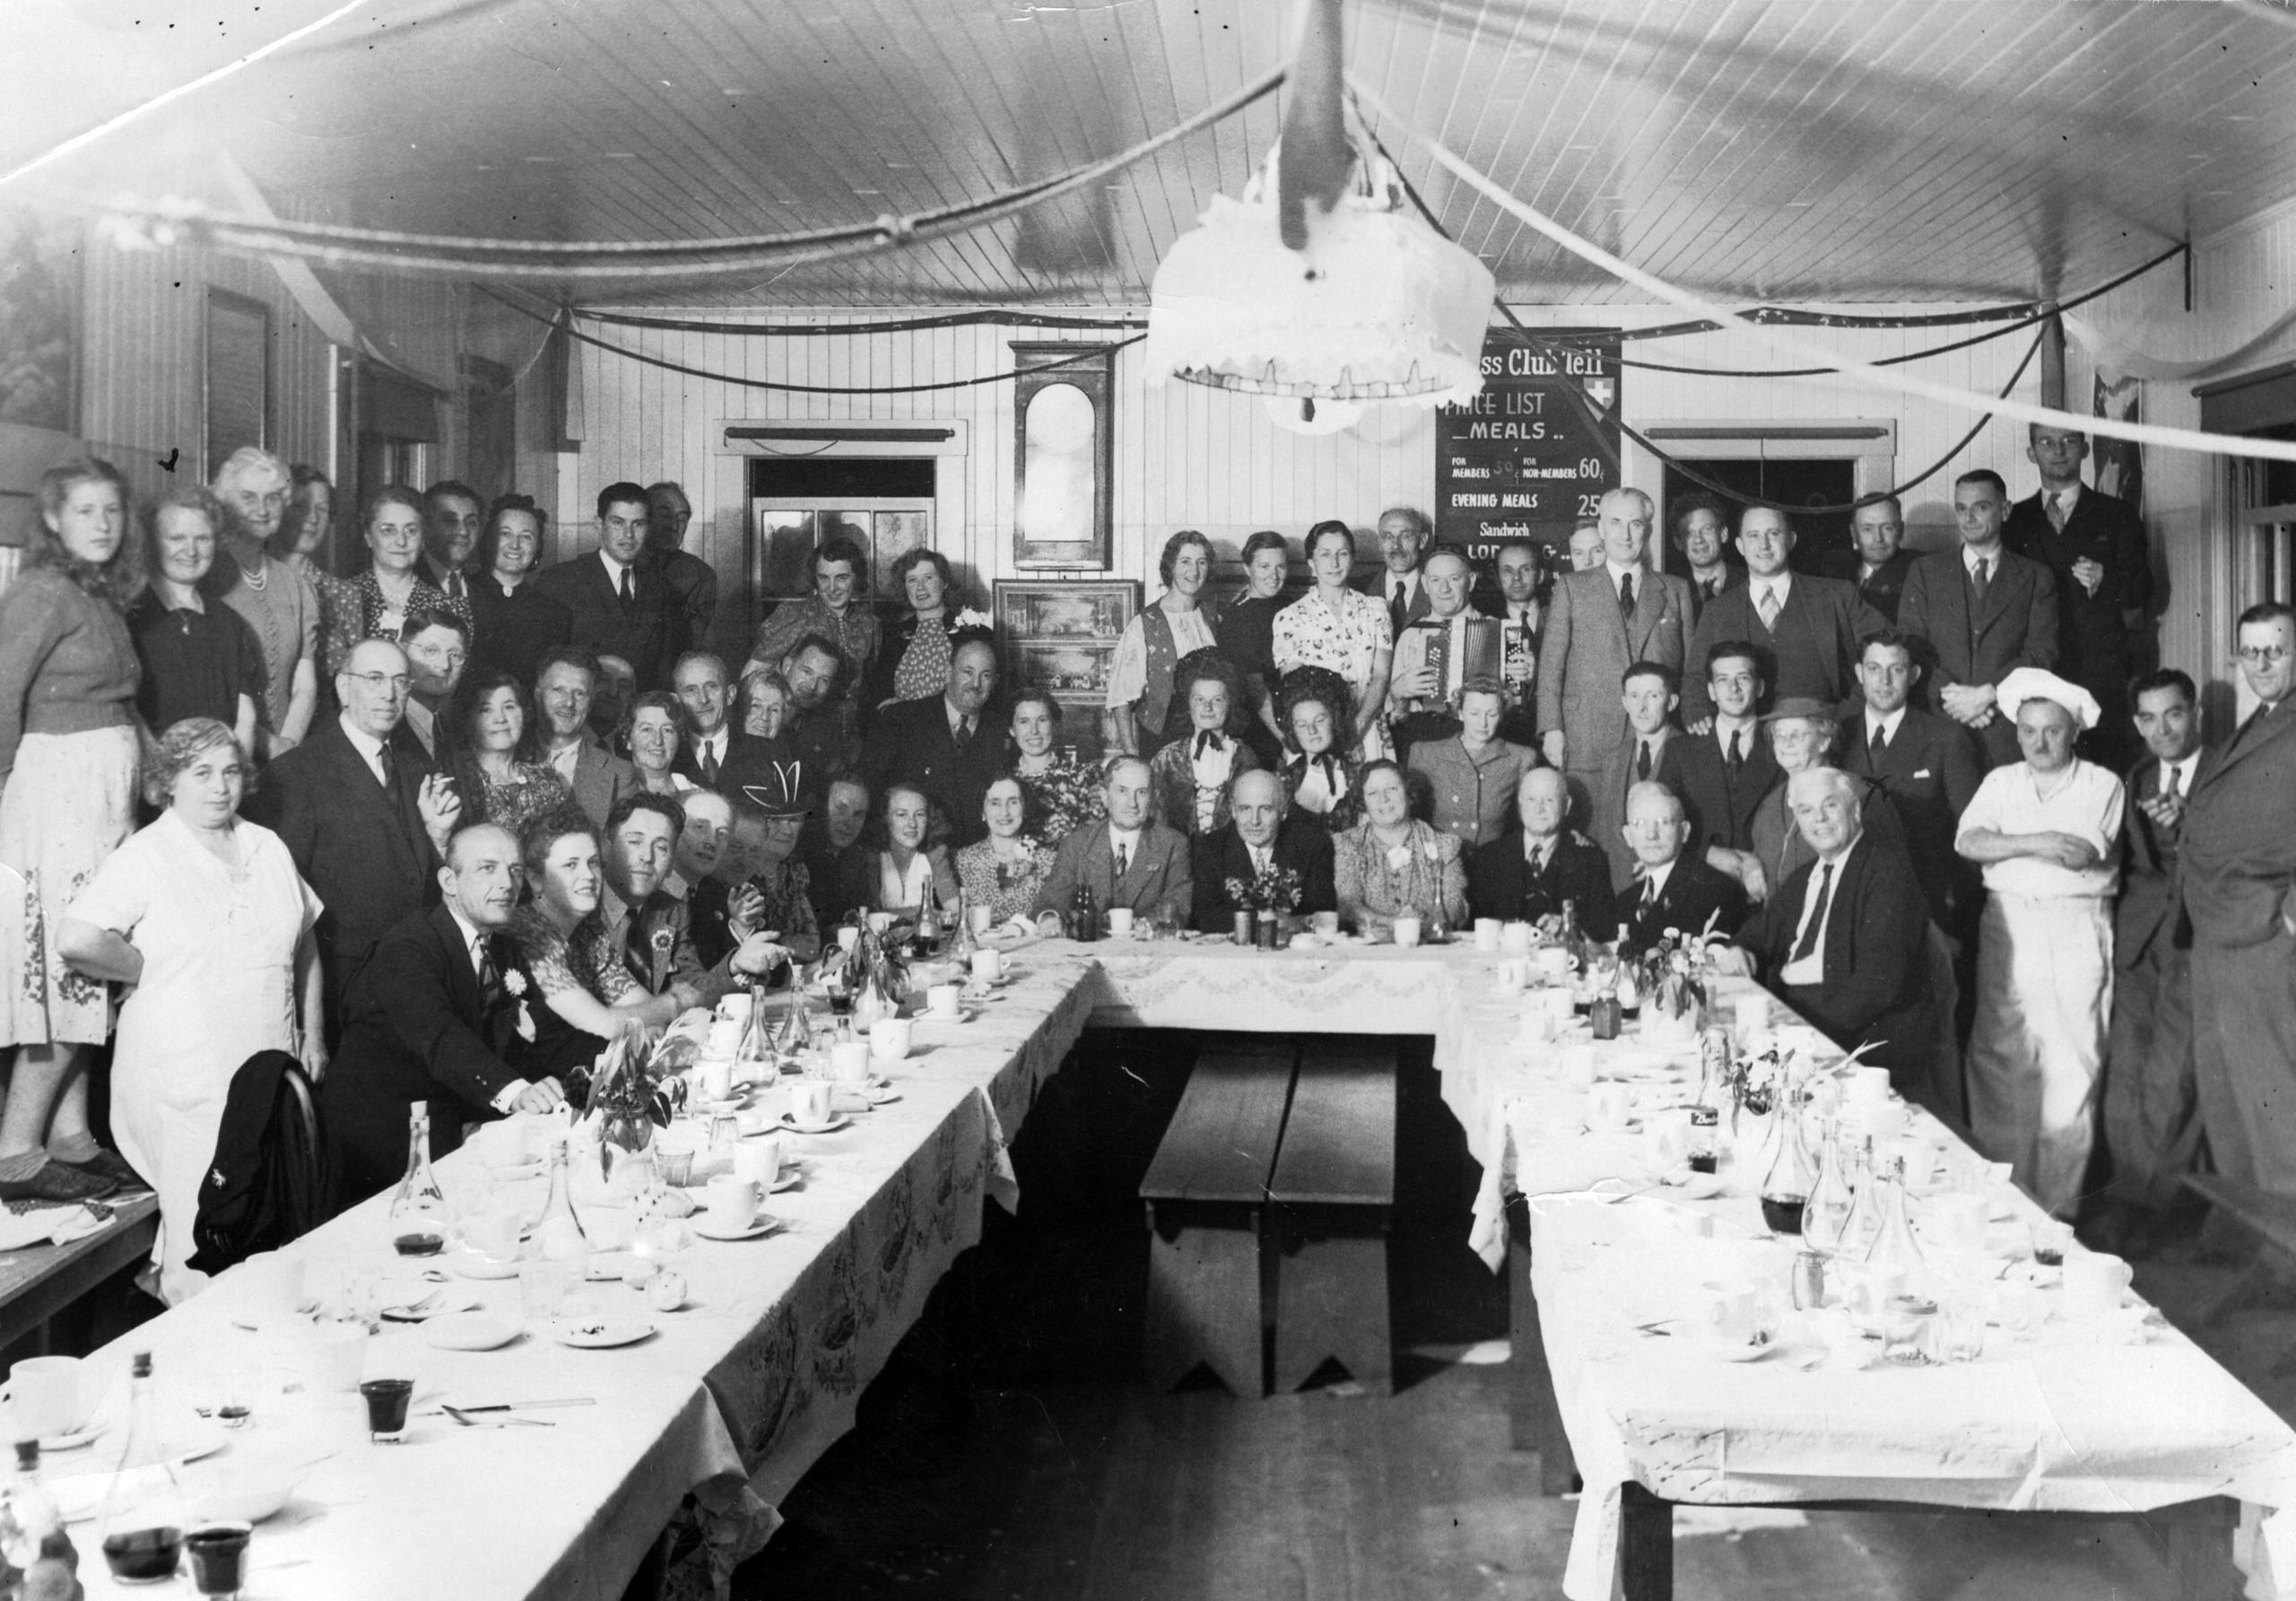 gruppo di gente in posa dietro a un tavolo in una foro in bianco e nero